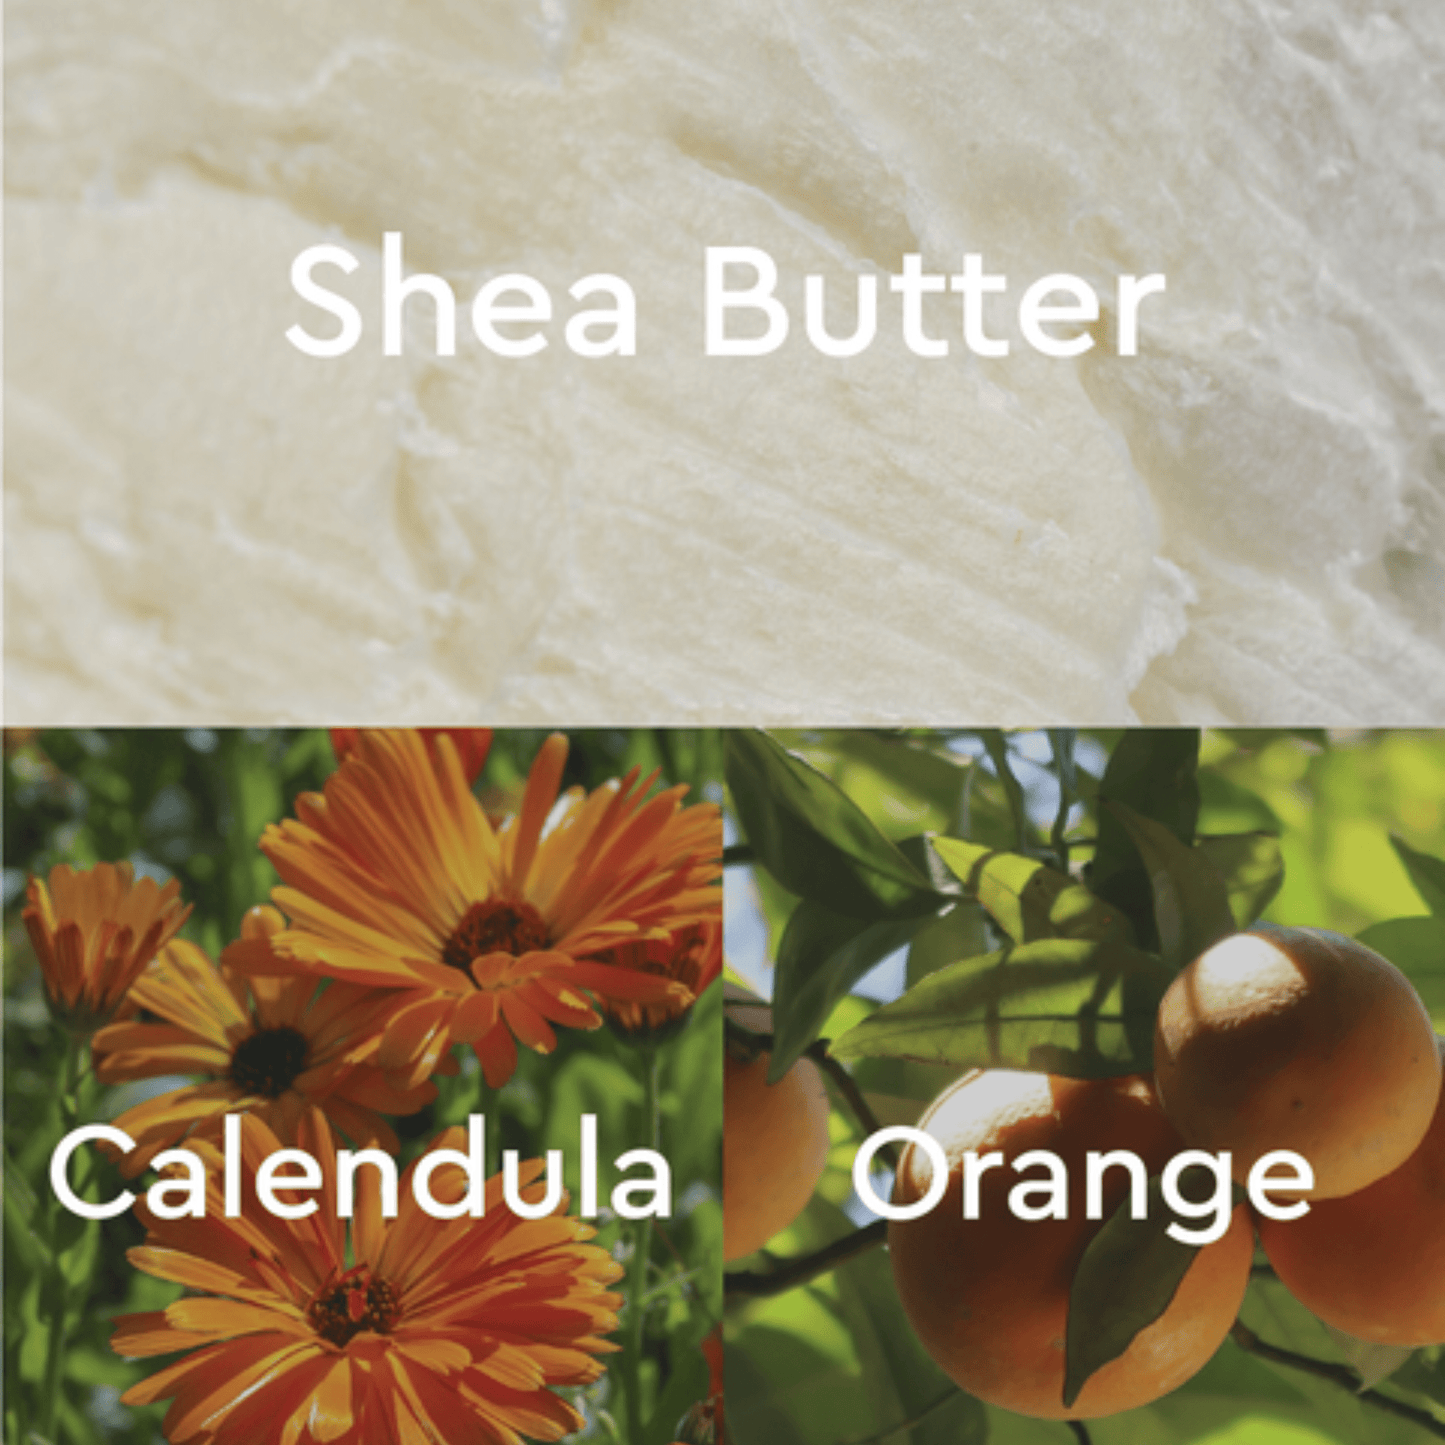 Alternate Image of Calendula & Orange Foot Repair Butter